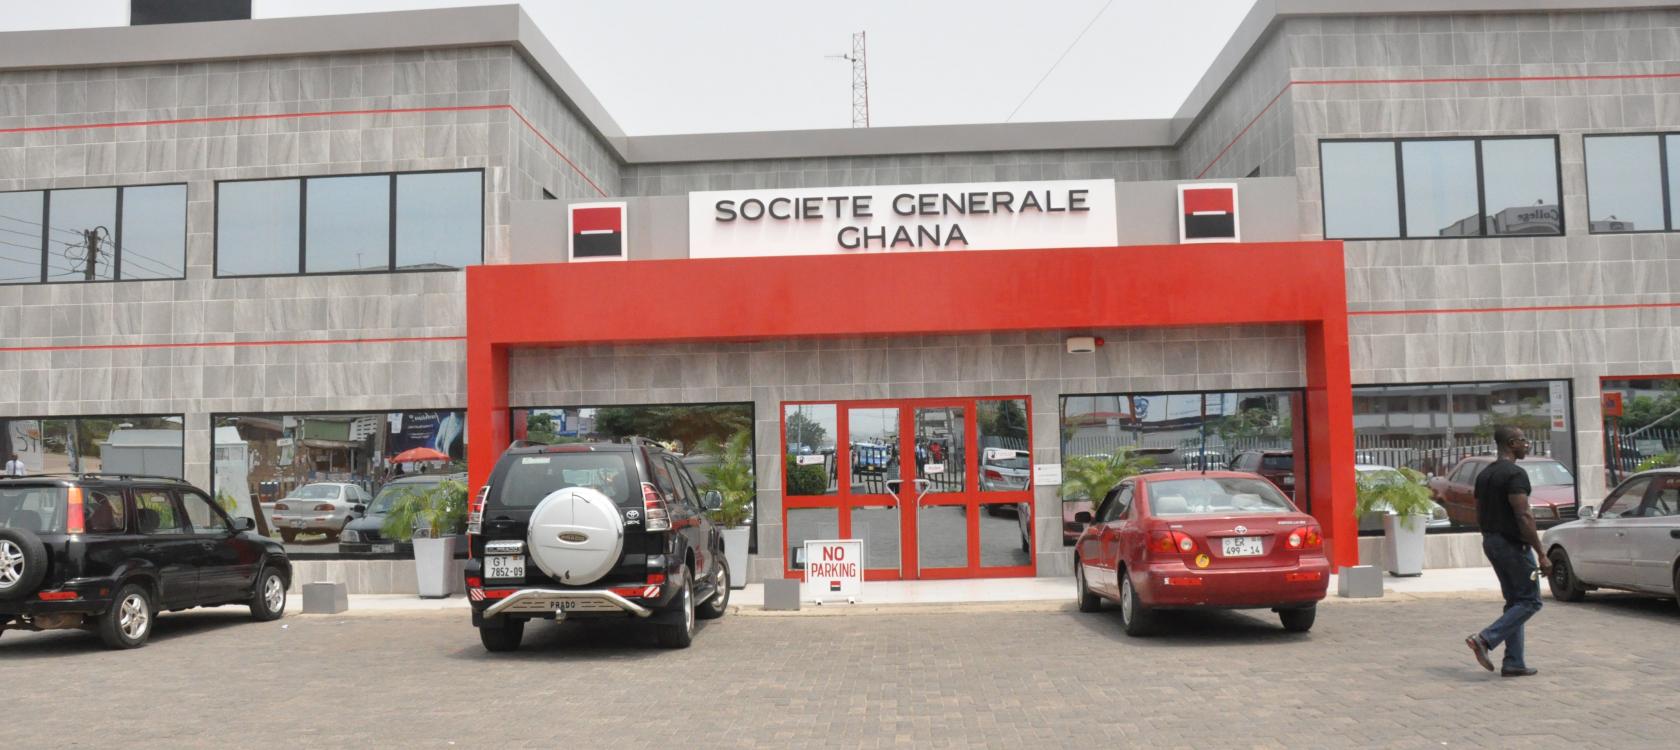 Societe Generale Bank denies leaving Ghana